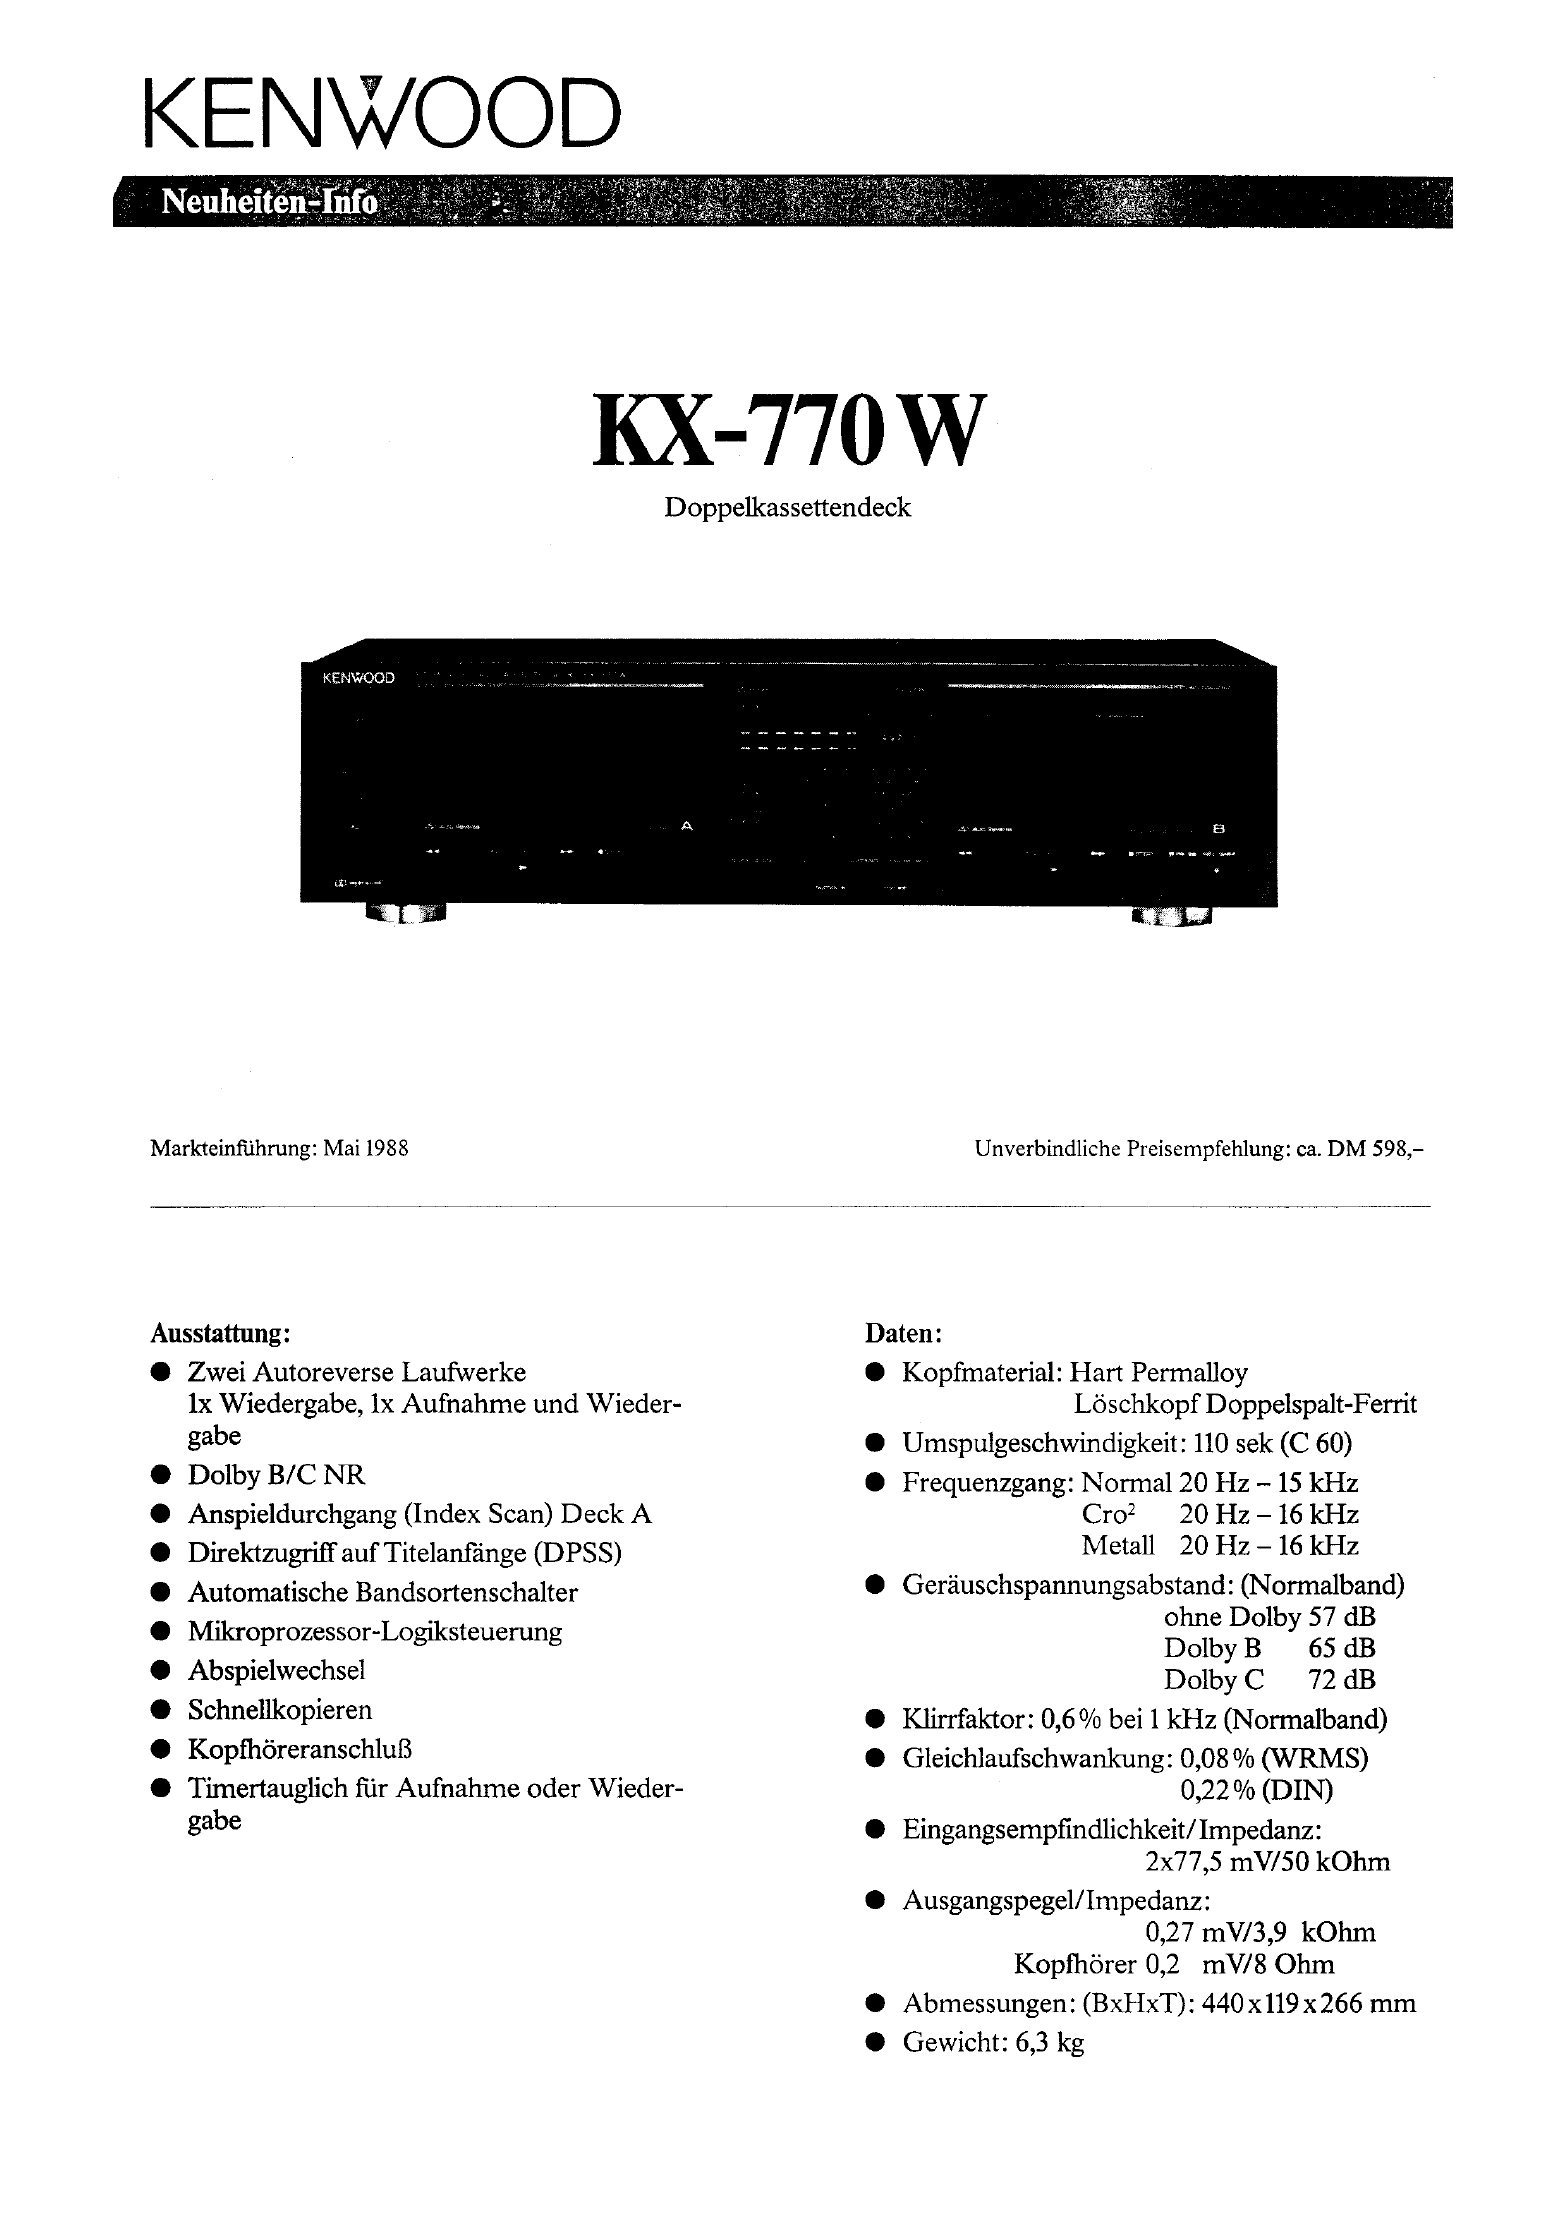 Kenwood KX-770 W-Prospekt-1988.jpg